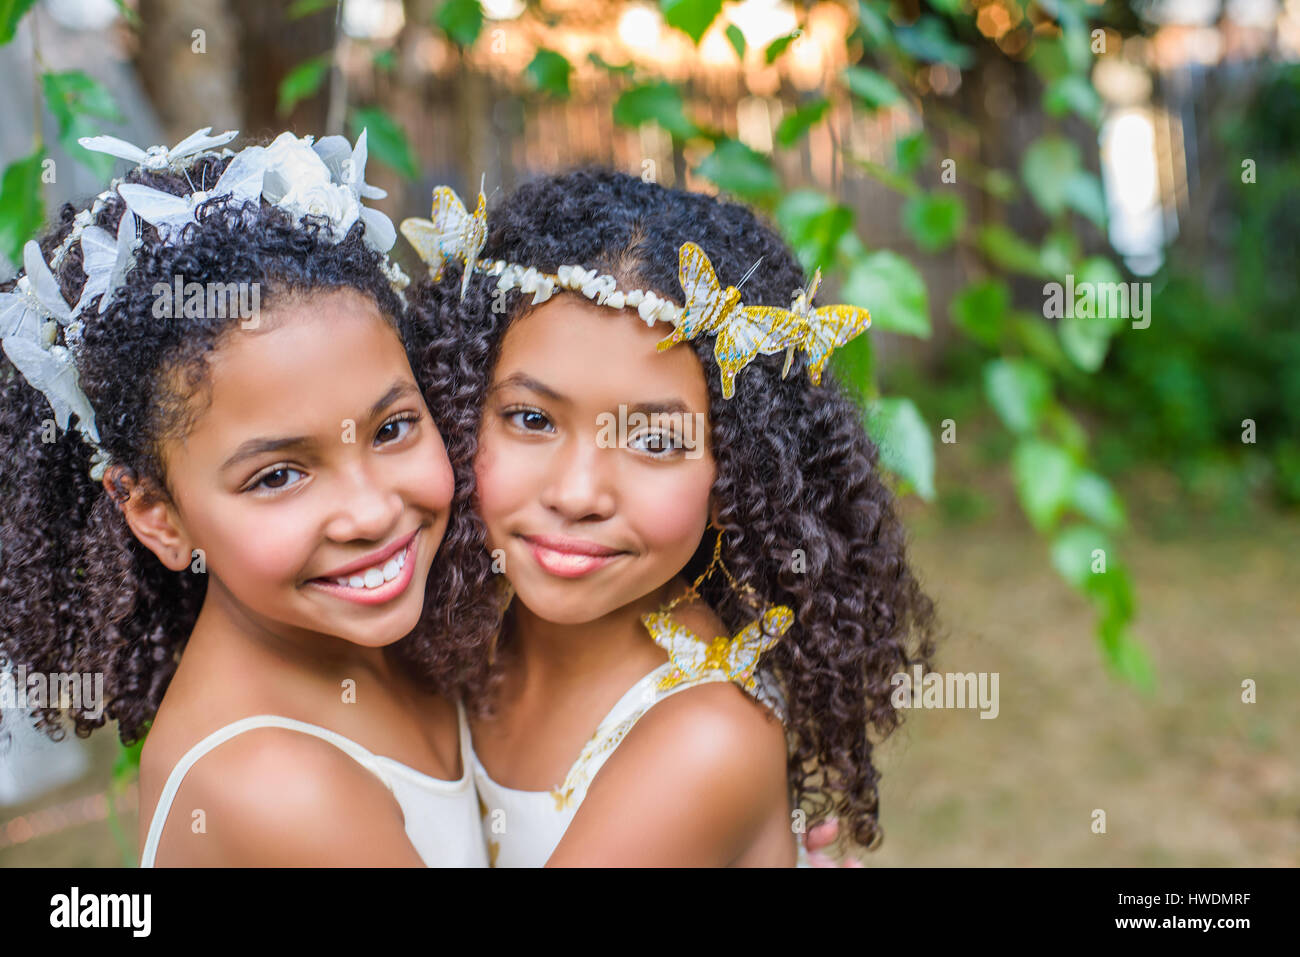 Portrait of two girls, wearing butterflies in hair Stock Photo